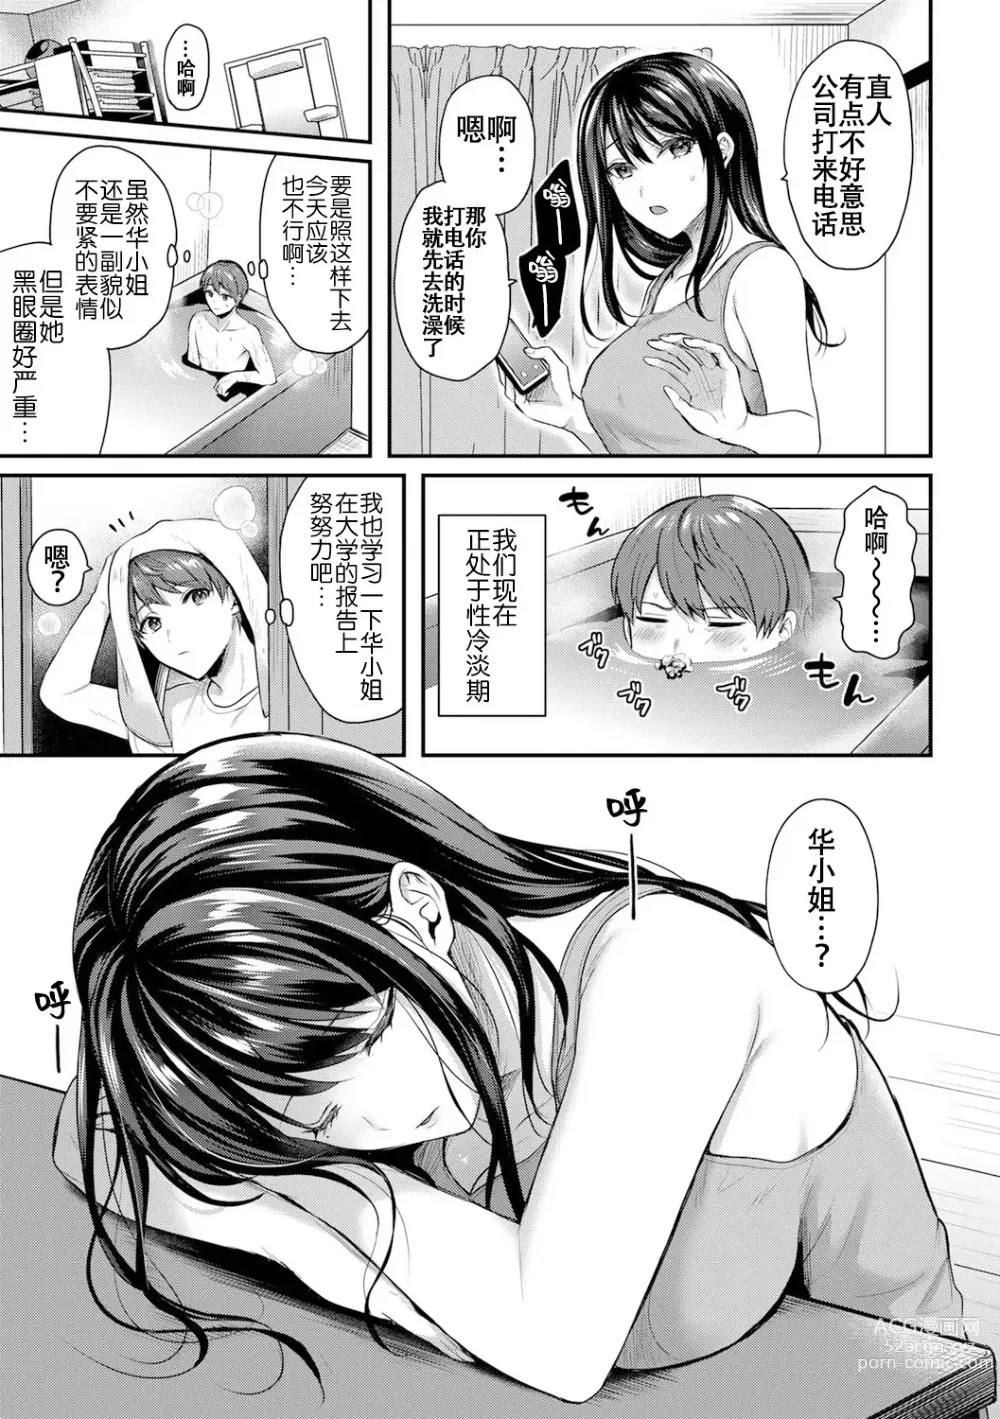 Page 3 of manga 今天也不行…?